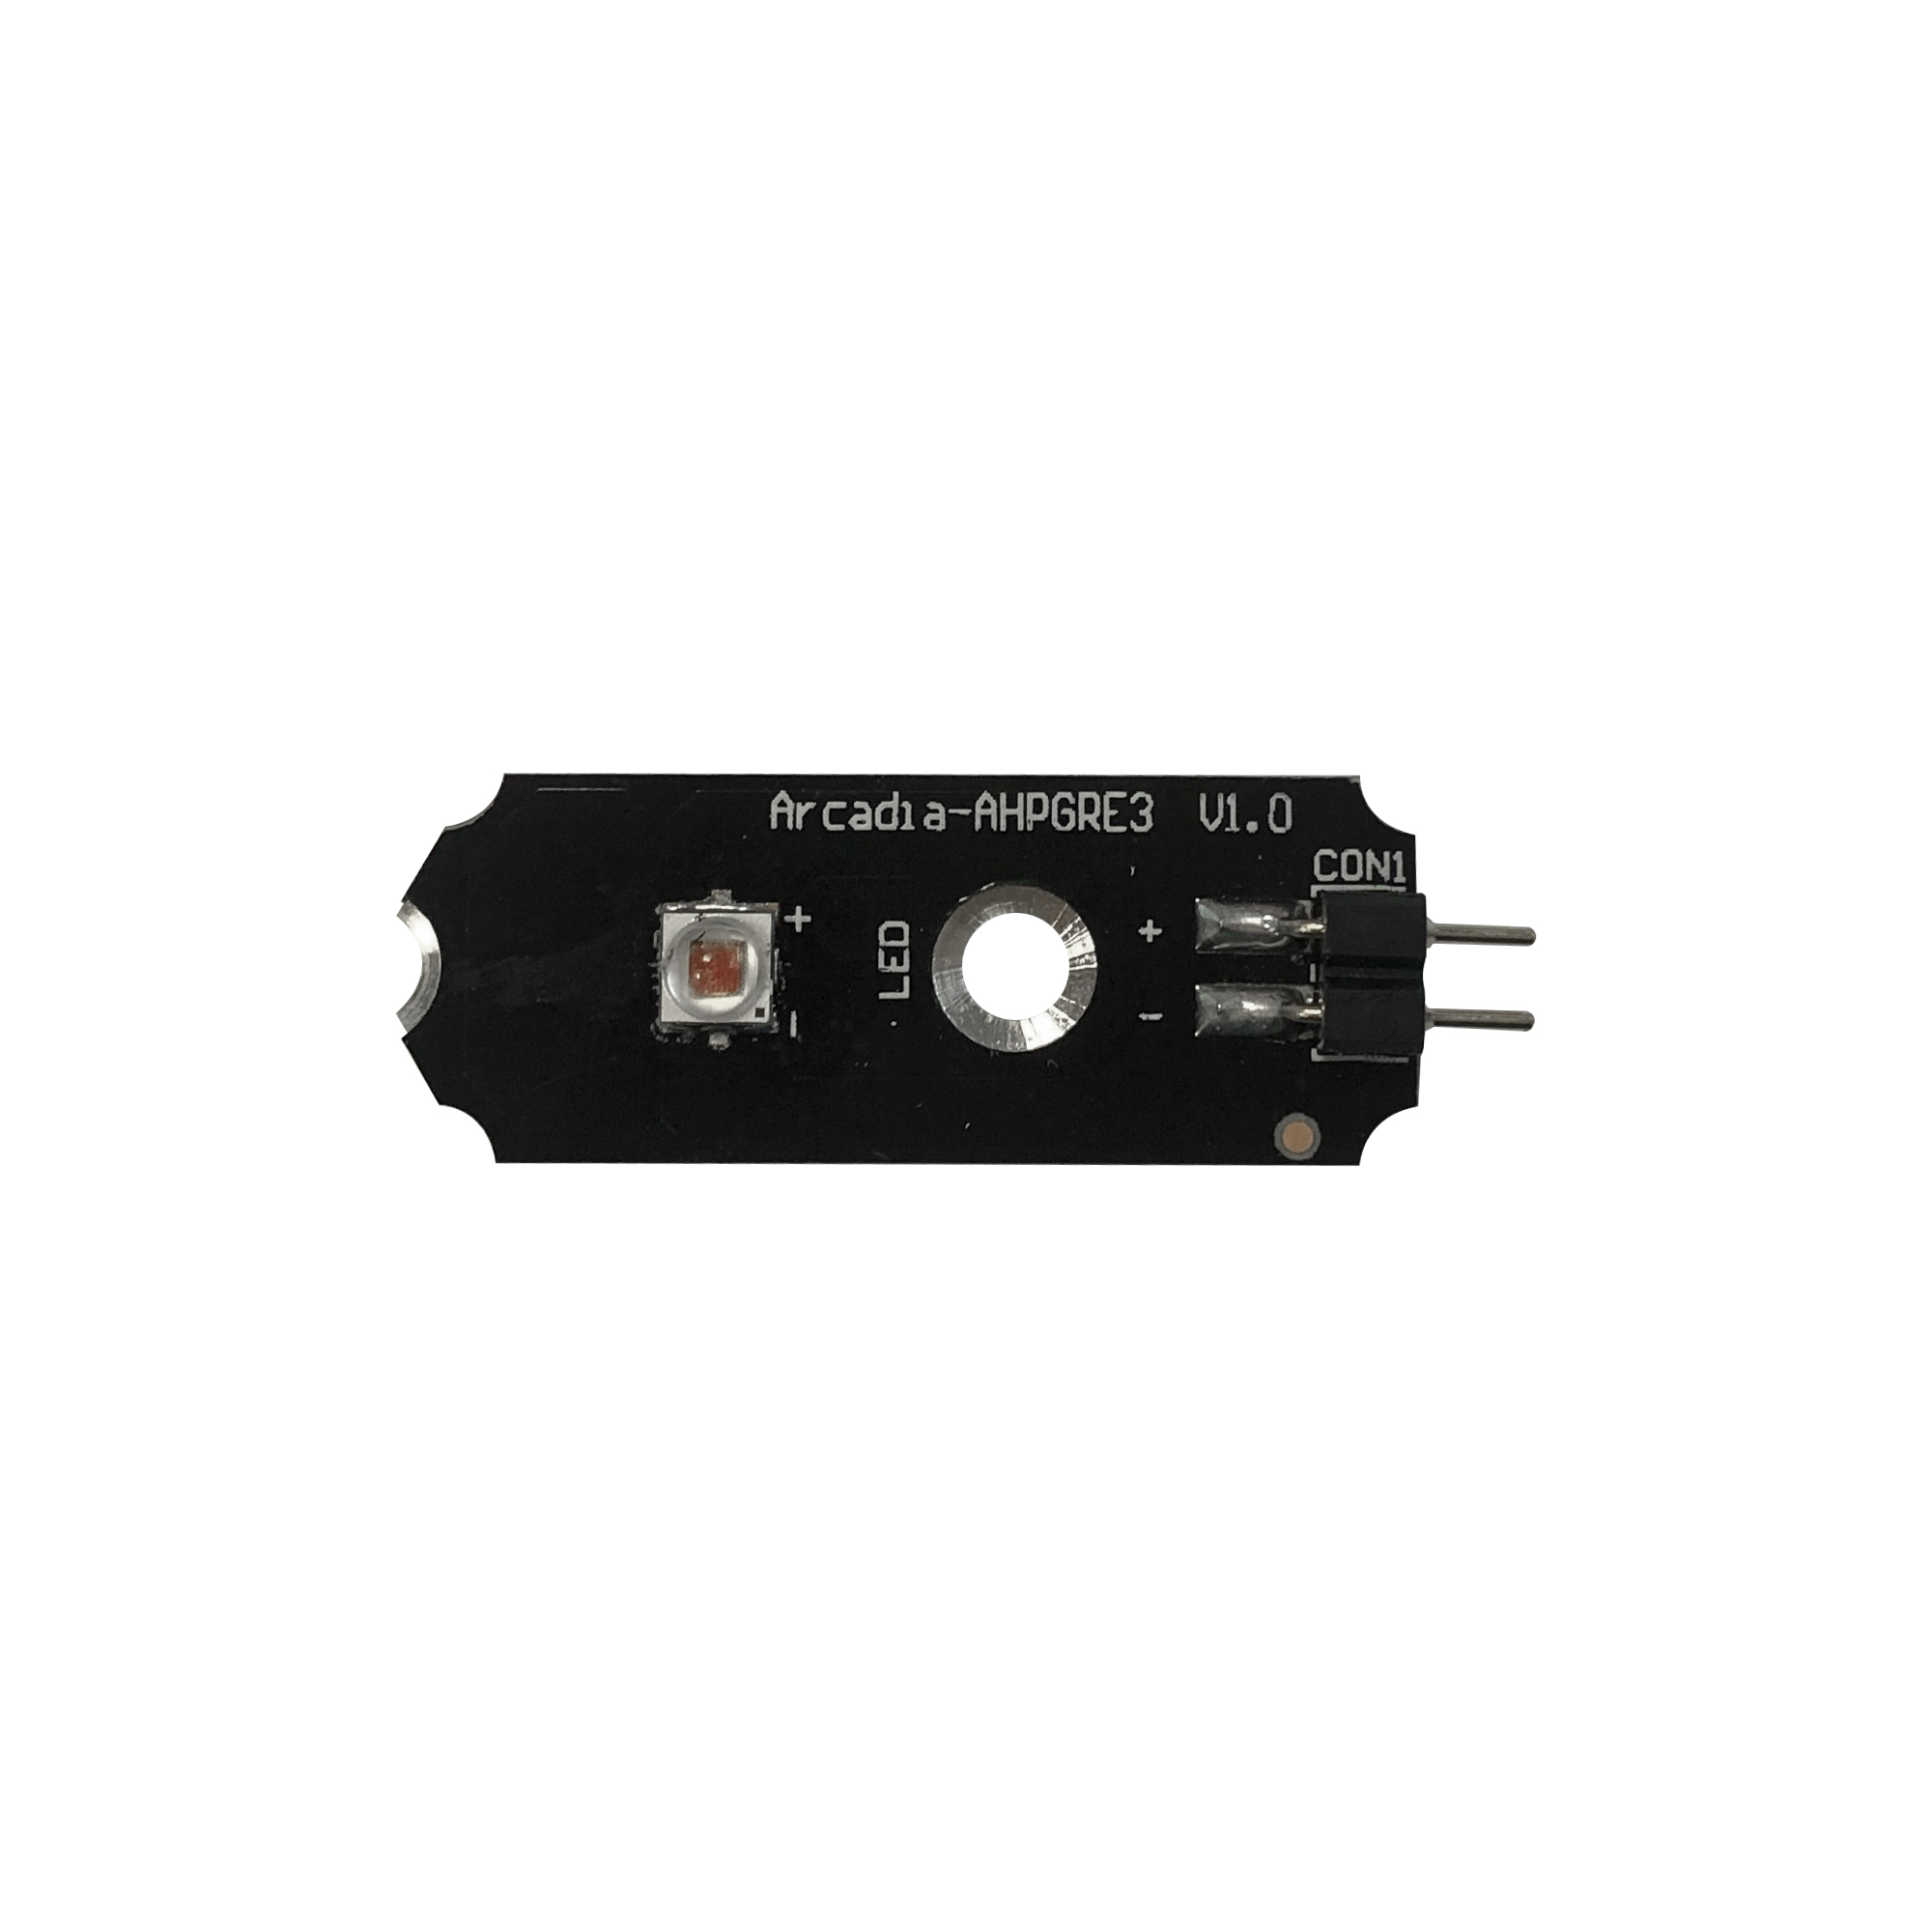 LED de rechange Red 620-630nm 3W (Réf : 216133) pour Série 6 AQUARIUM SYSTEMS et ARCADIA